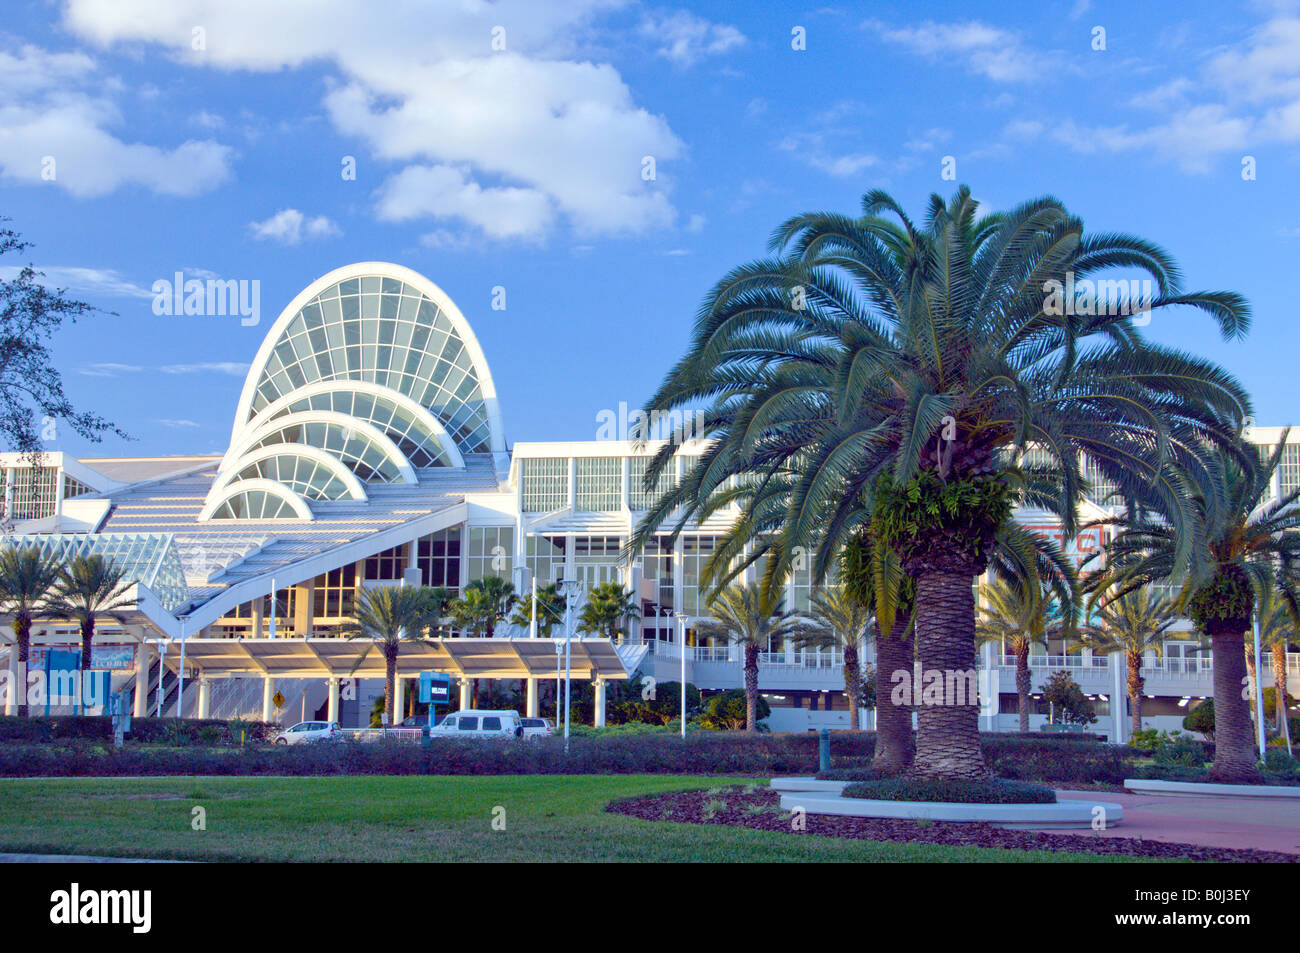 The Convention Center in Orlando Florida USA Stock Photo